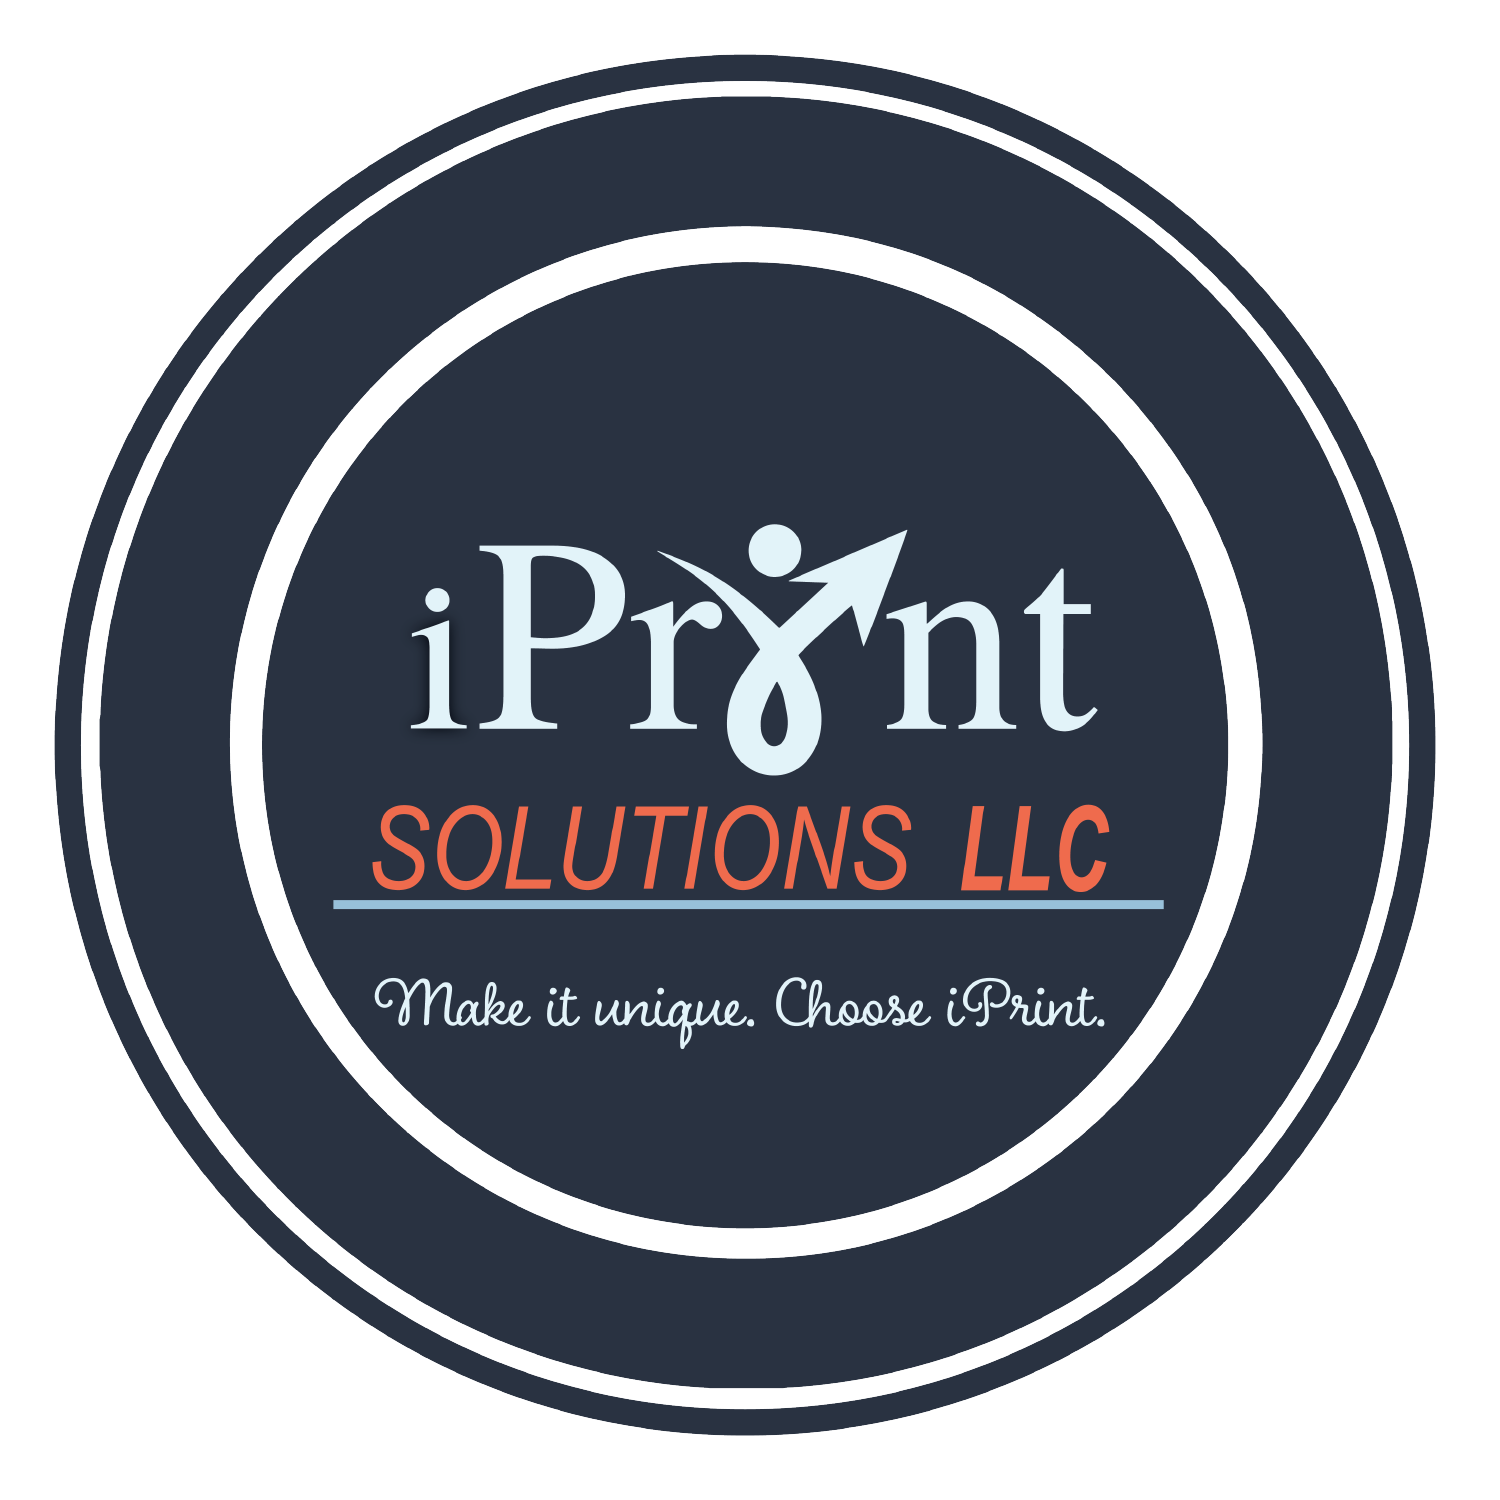 iPrint Solutions LLC